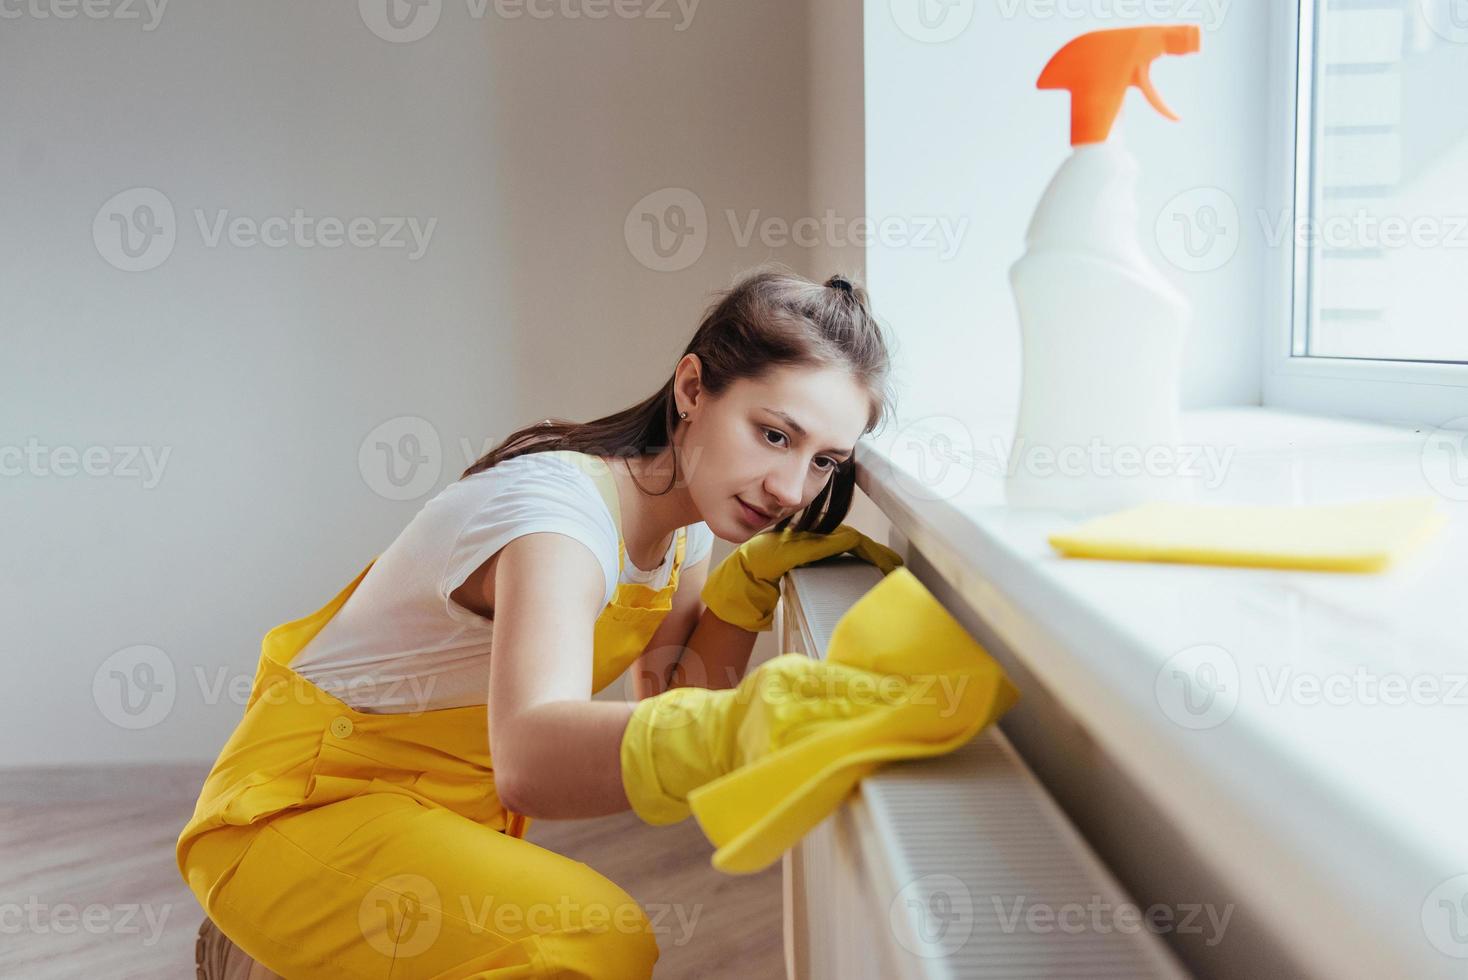 casalinga nel giallo uniforme lavori con finestra e superficie addetto alle pulizie al chiuso. Casa rinnovamento concezione foto